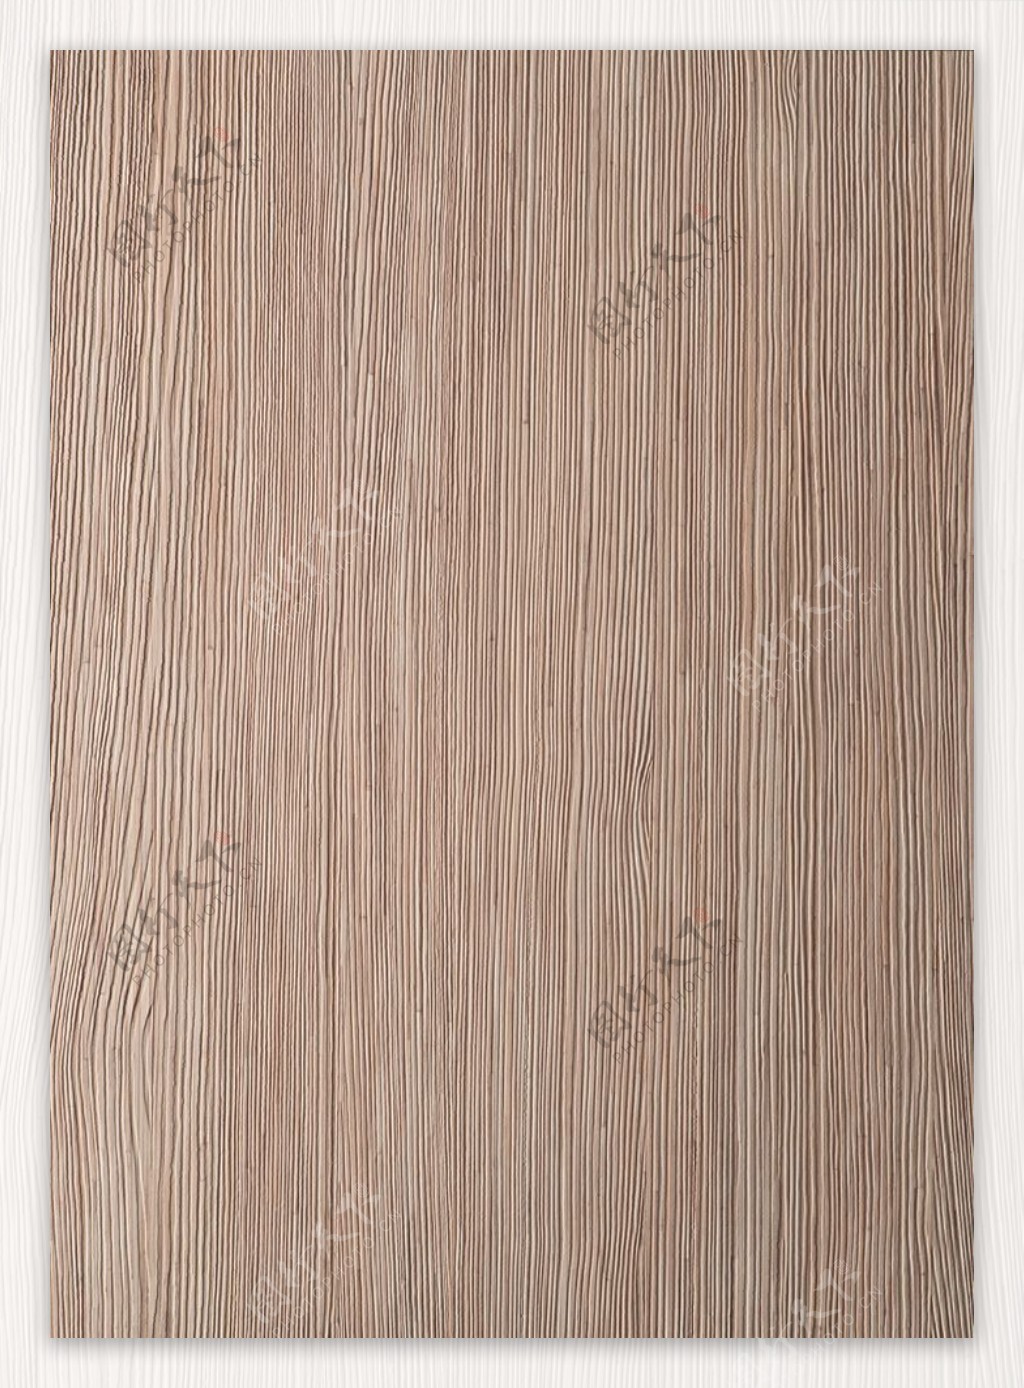 木质材质纹理素材